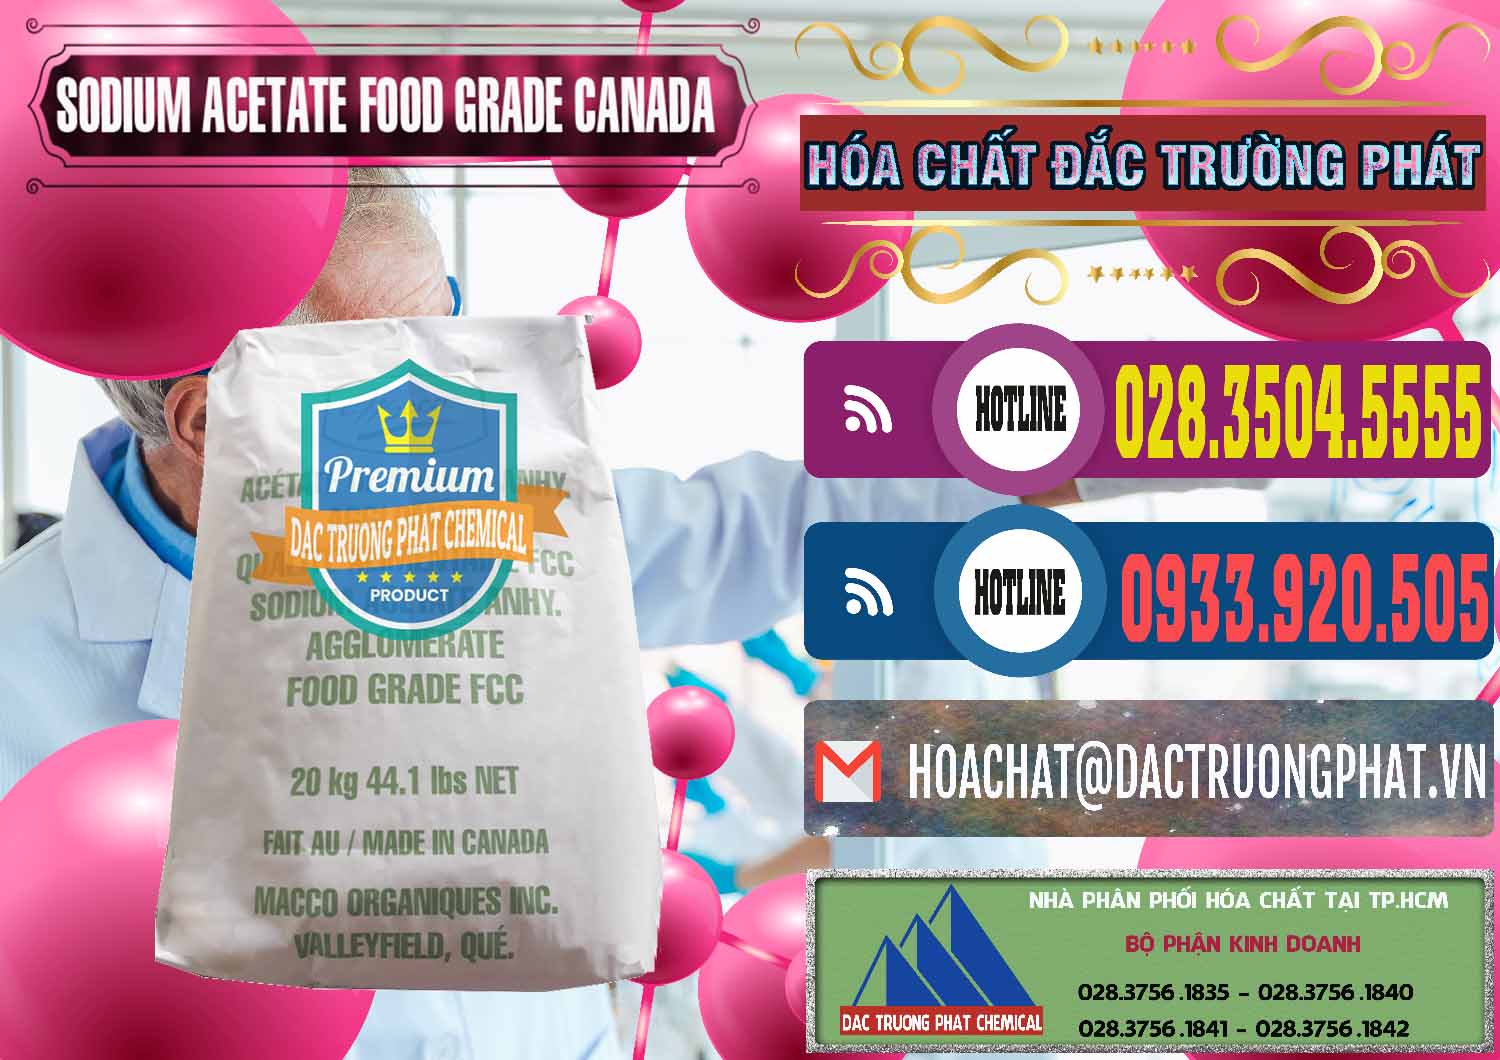 Cty chuyên phân phối ( bán ) Sodium Acetate - Natri Acetate Food Grade Canada - 0282 - Nơi chuyên phân phối và bán hóa chất tại TP.HCM - muabanhoachat.com.vn